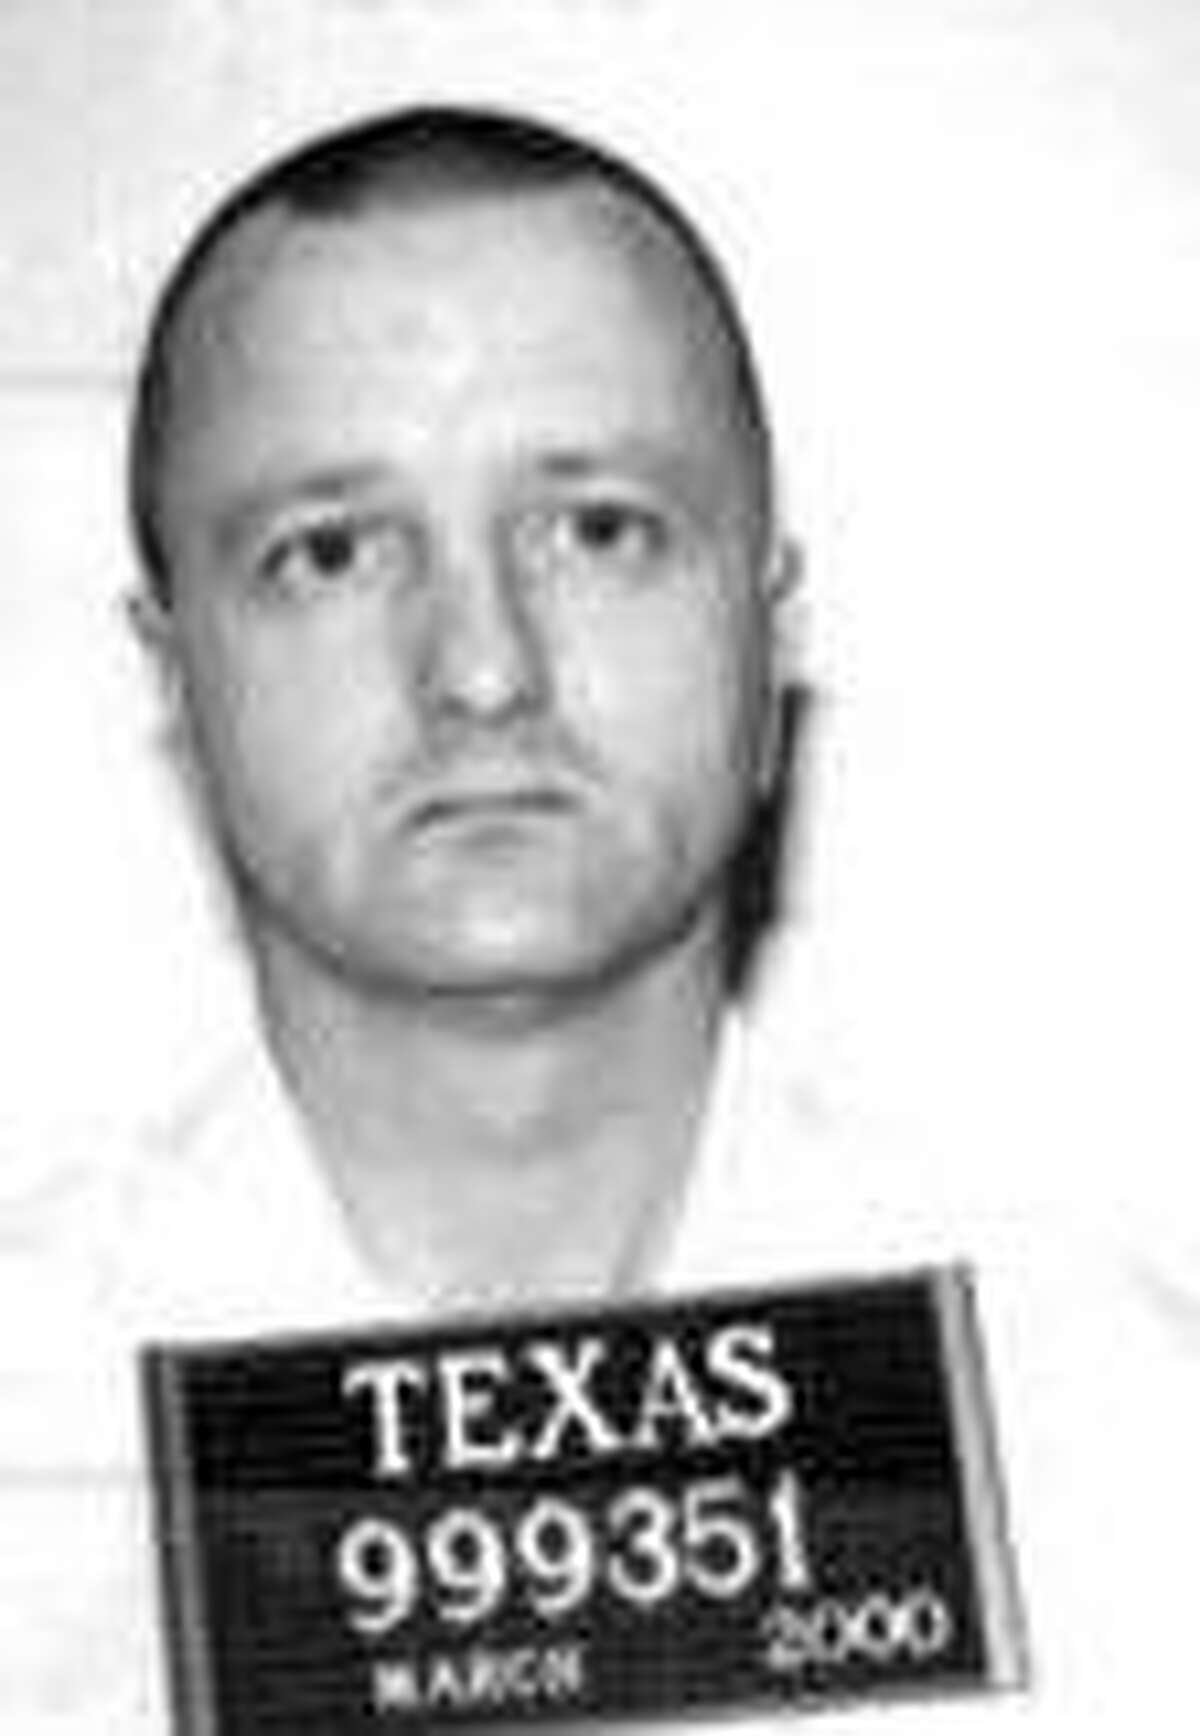 Troy Clark is on Texas death row.